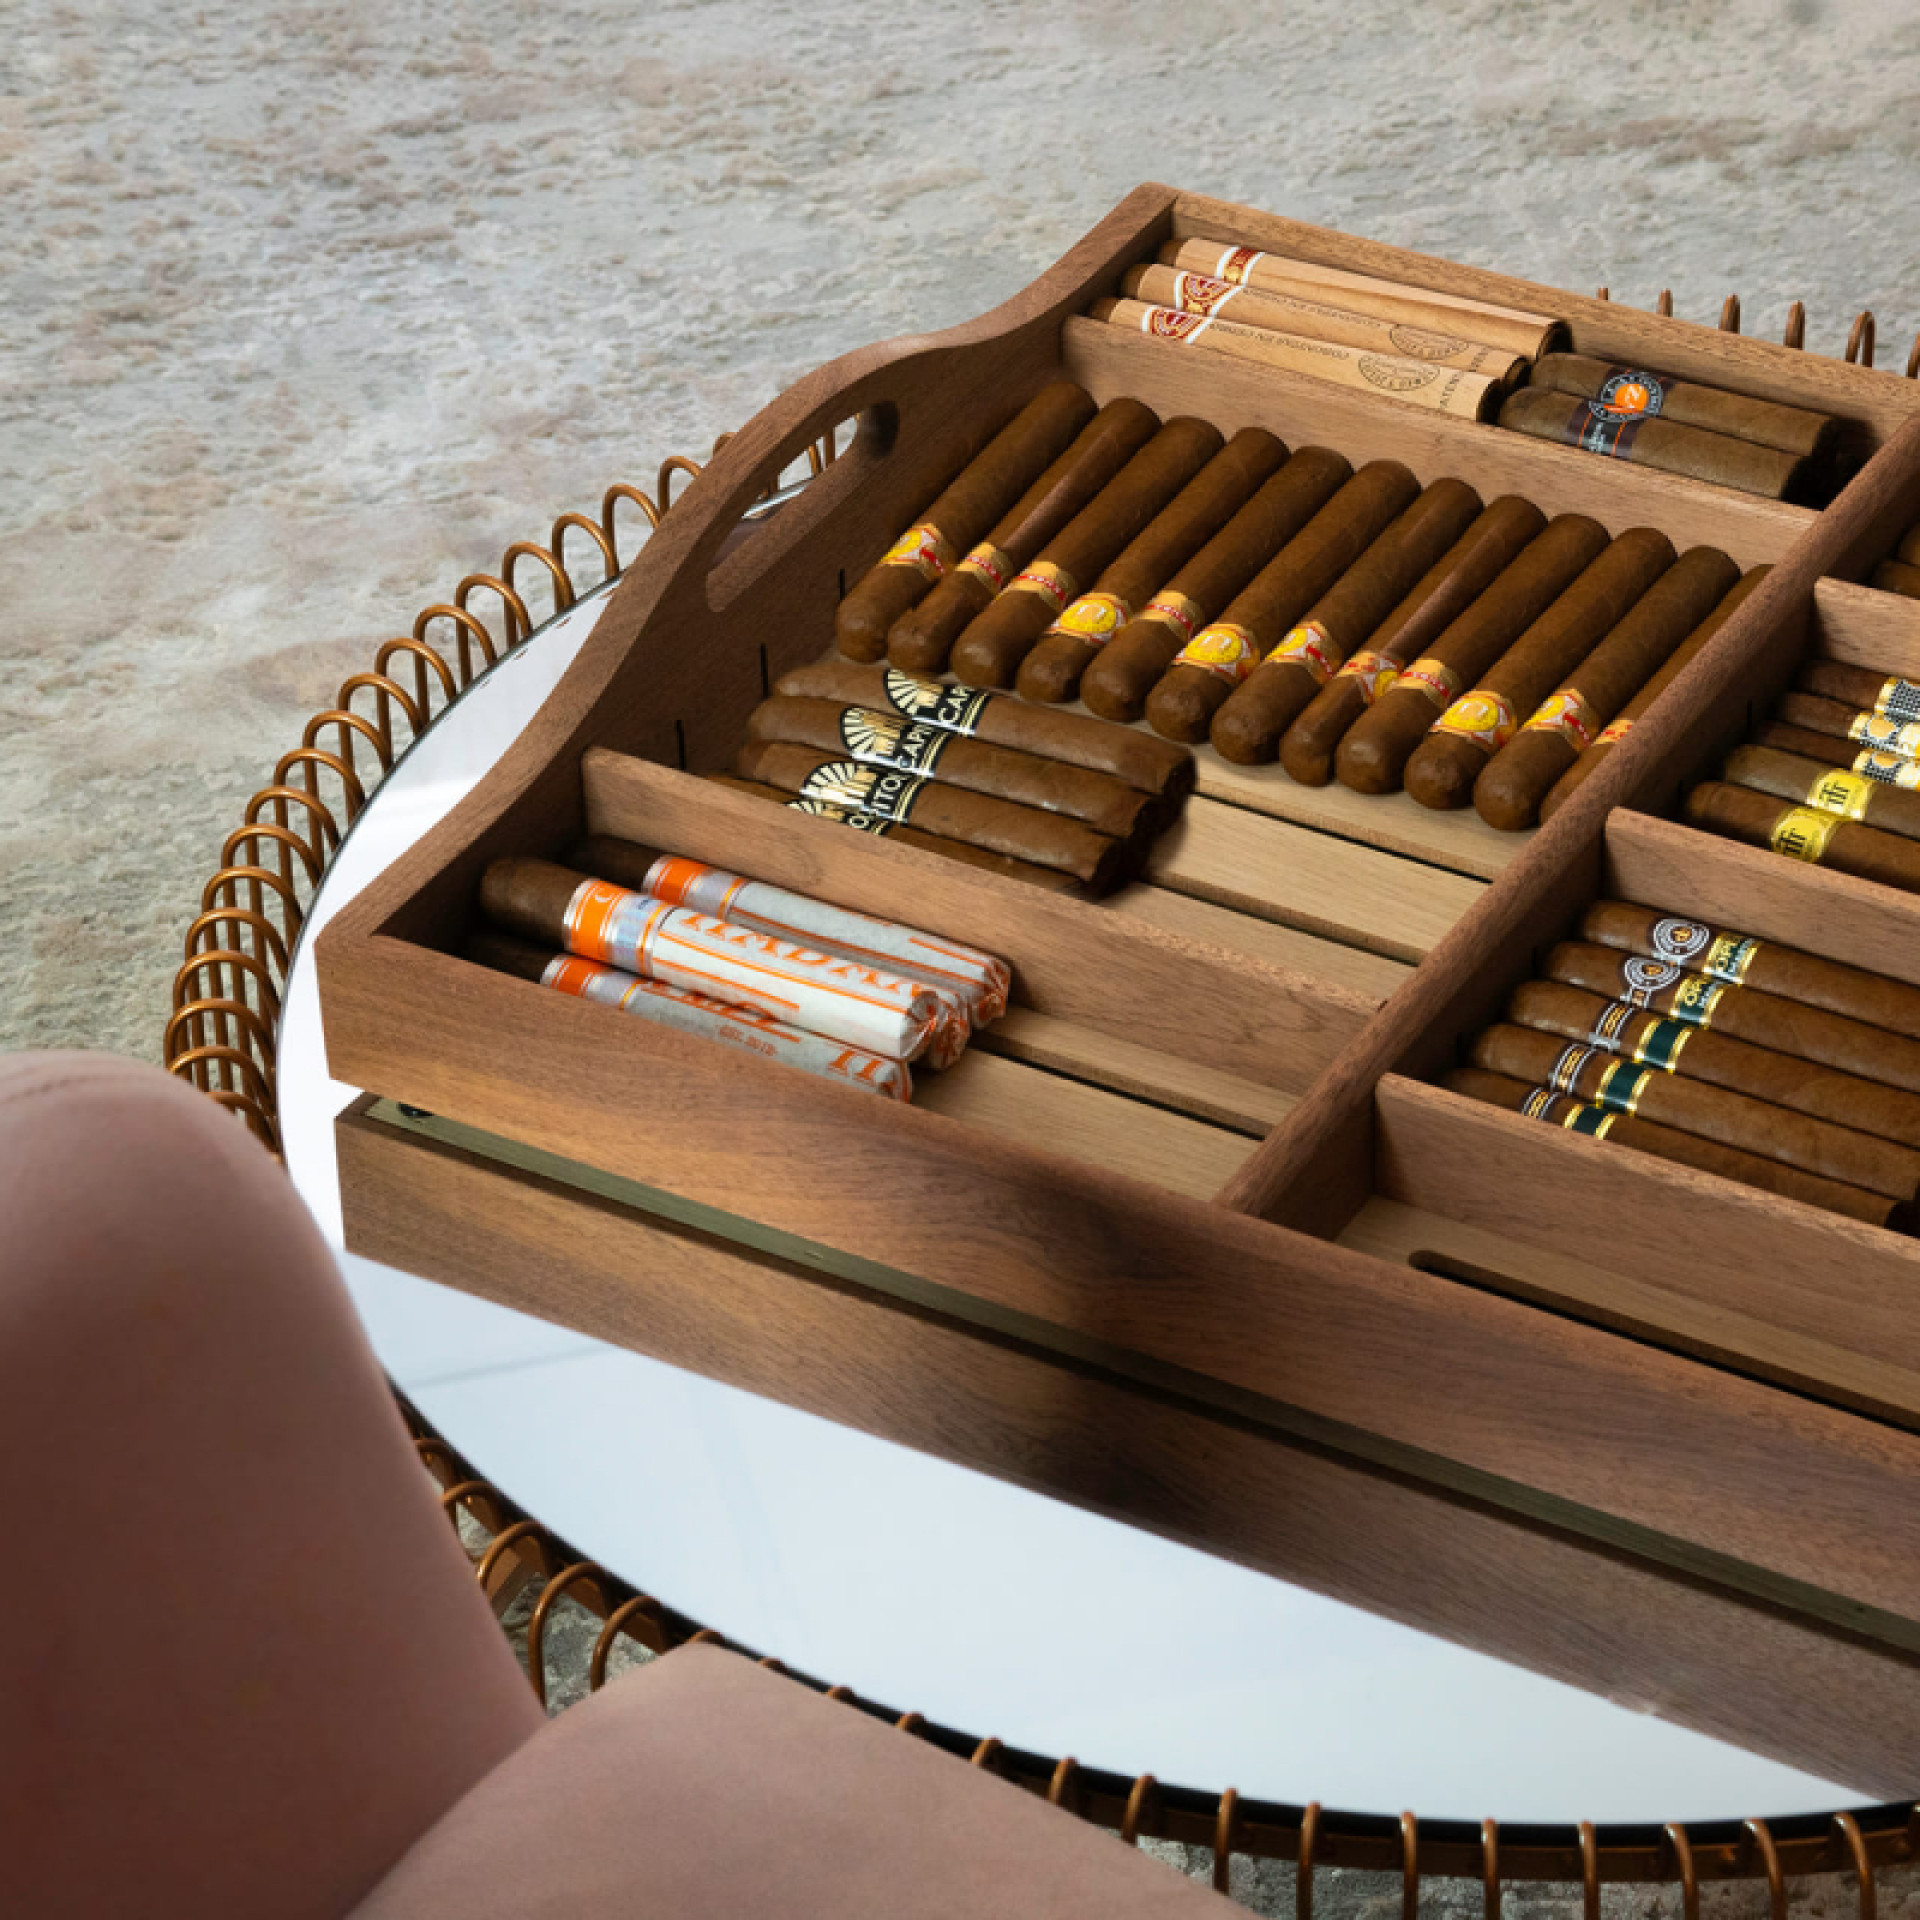 Étagère coulissante et son plateau de service des cigares amovible. Une belle présentation des cigares à partager avec vos invités.